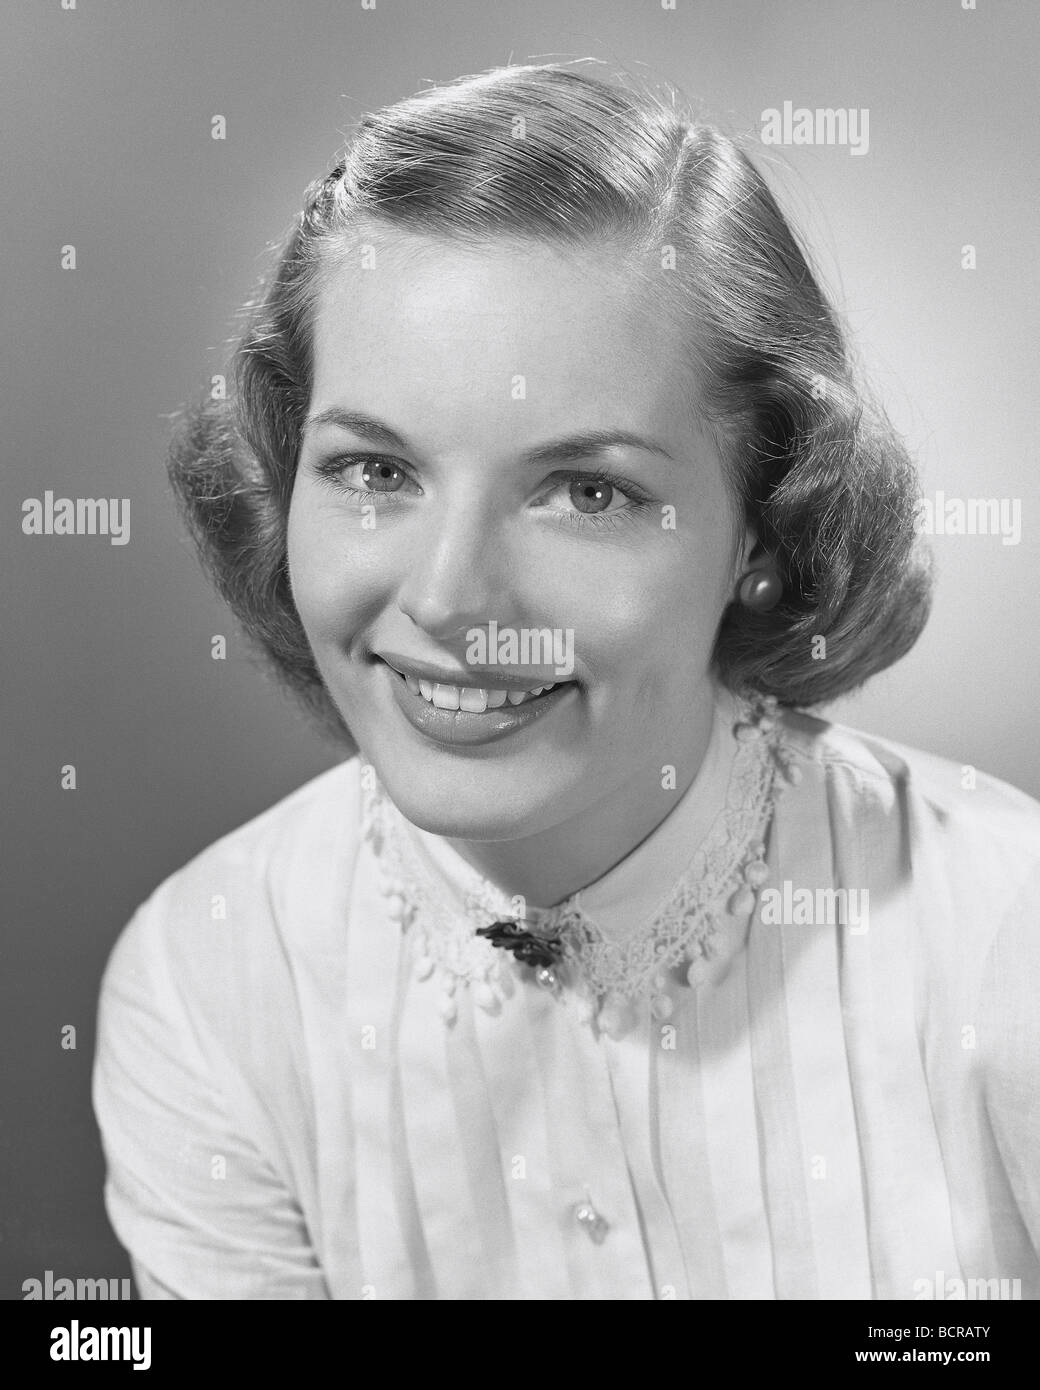 Portrait of young woman smiling, studio shot Banque D'Images